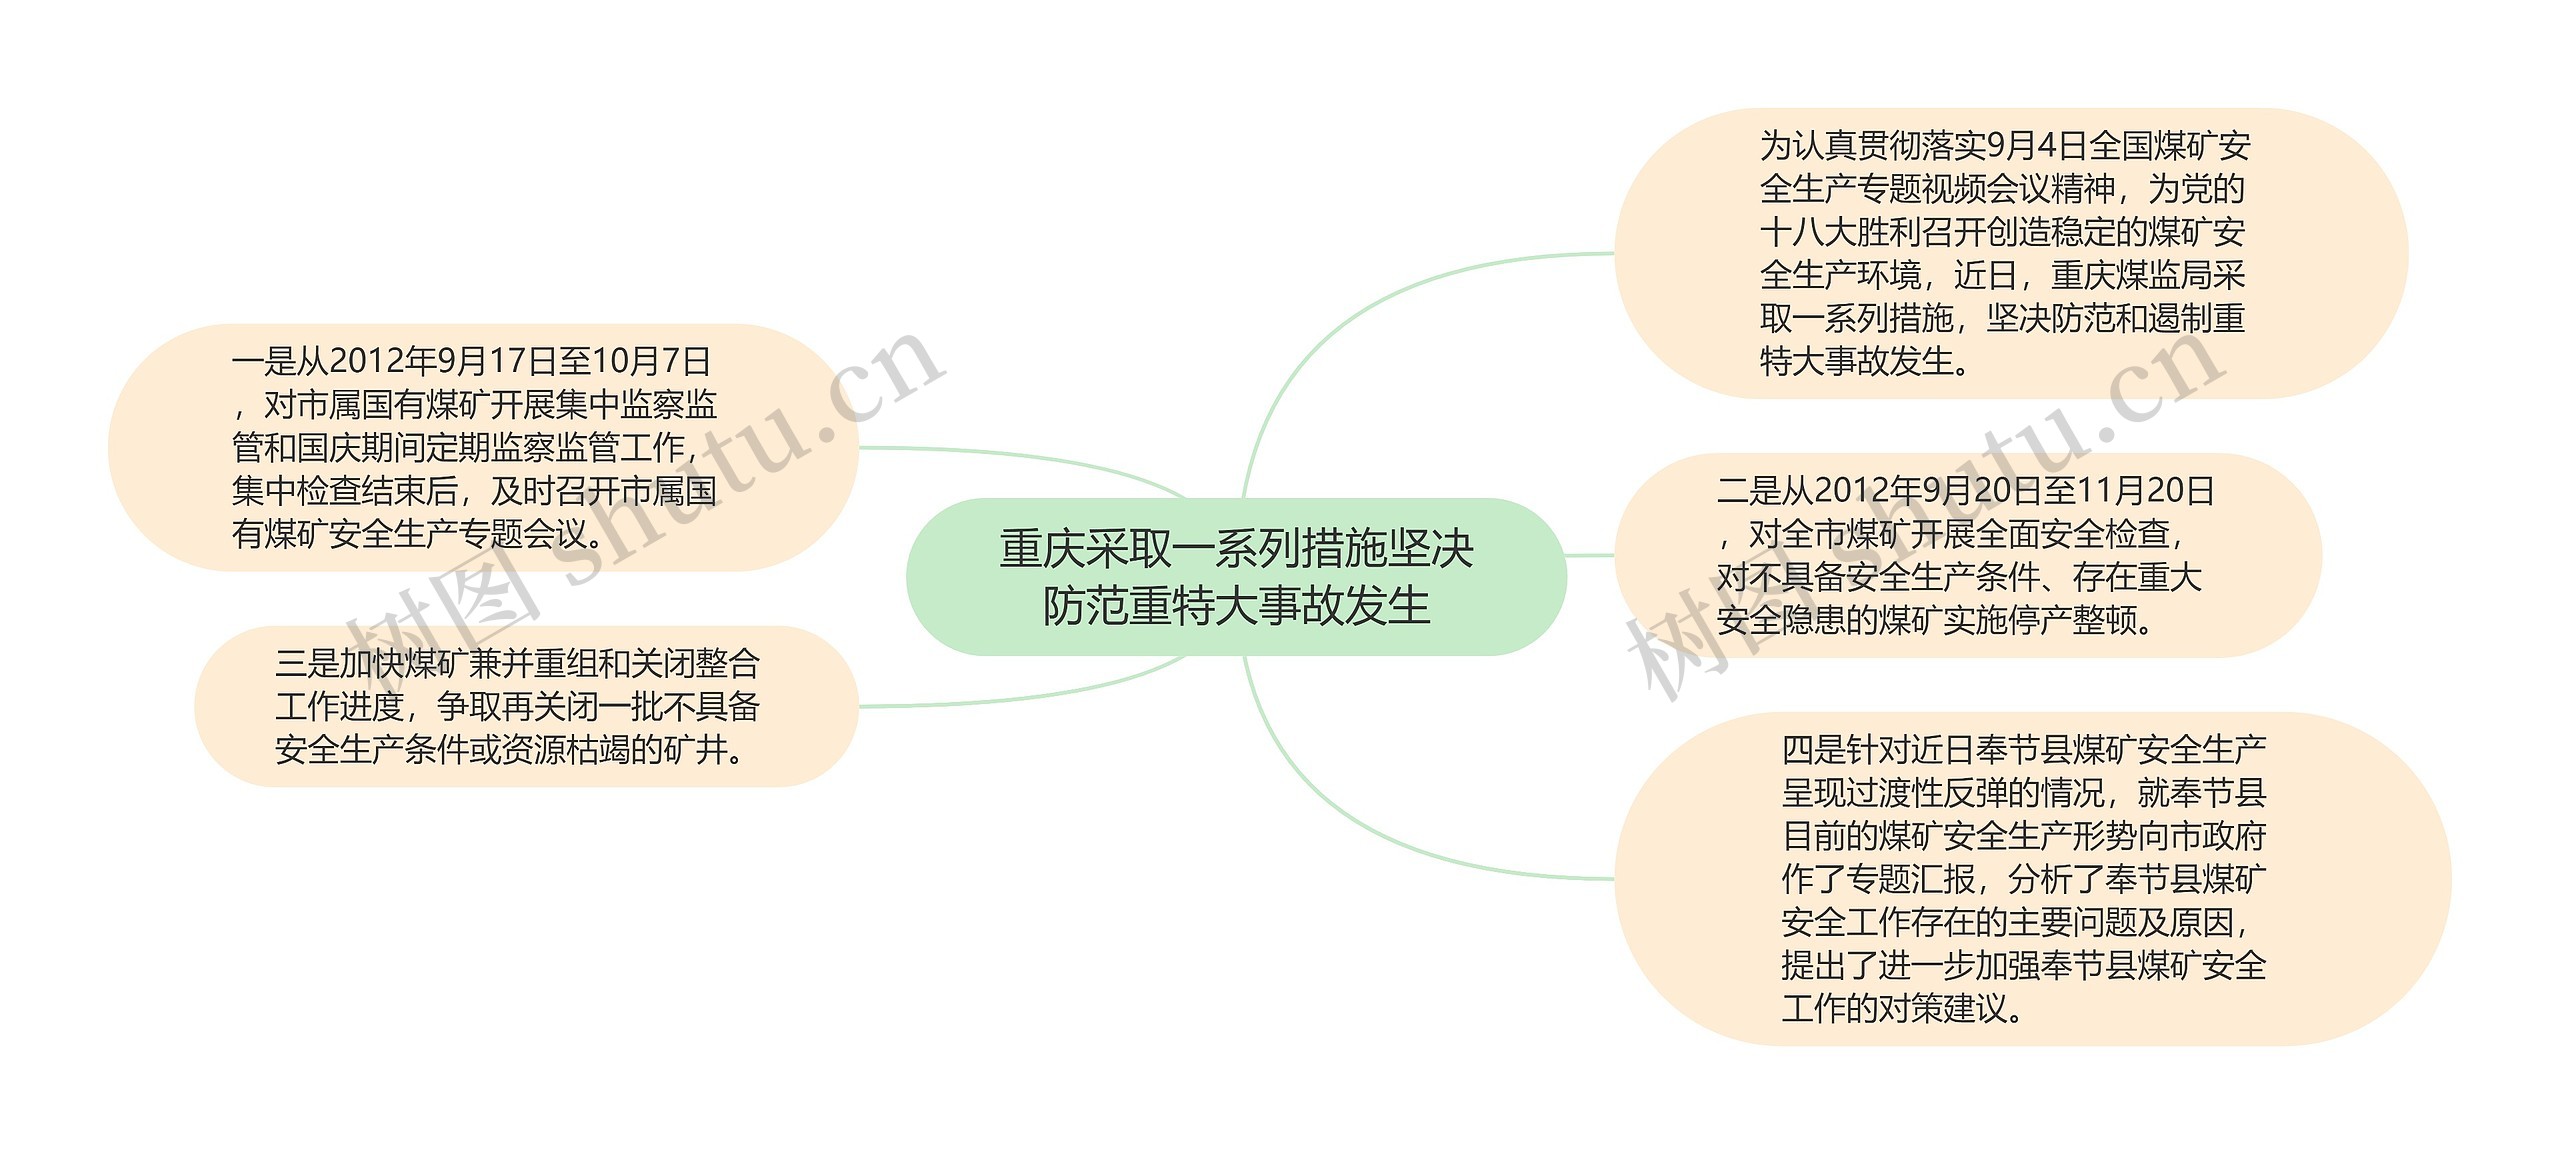 重庆采取一系列措施坚决防范重特大事故发生思维导图